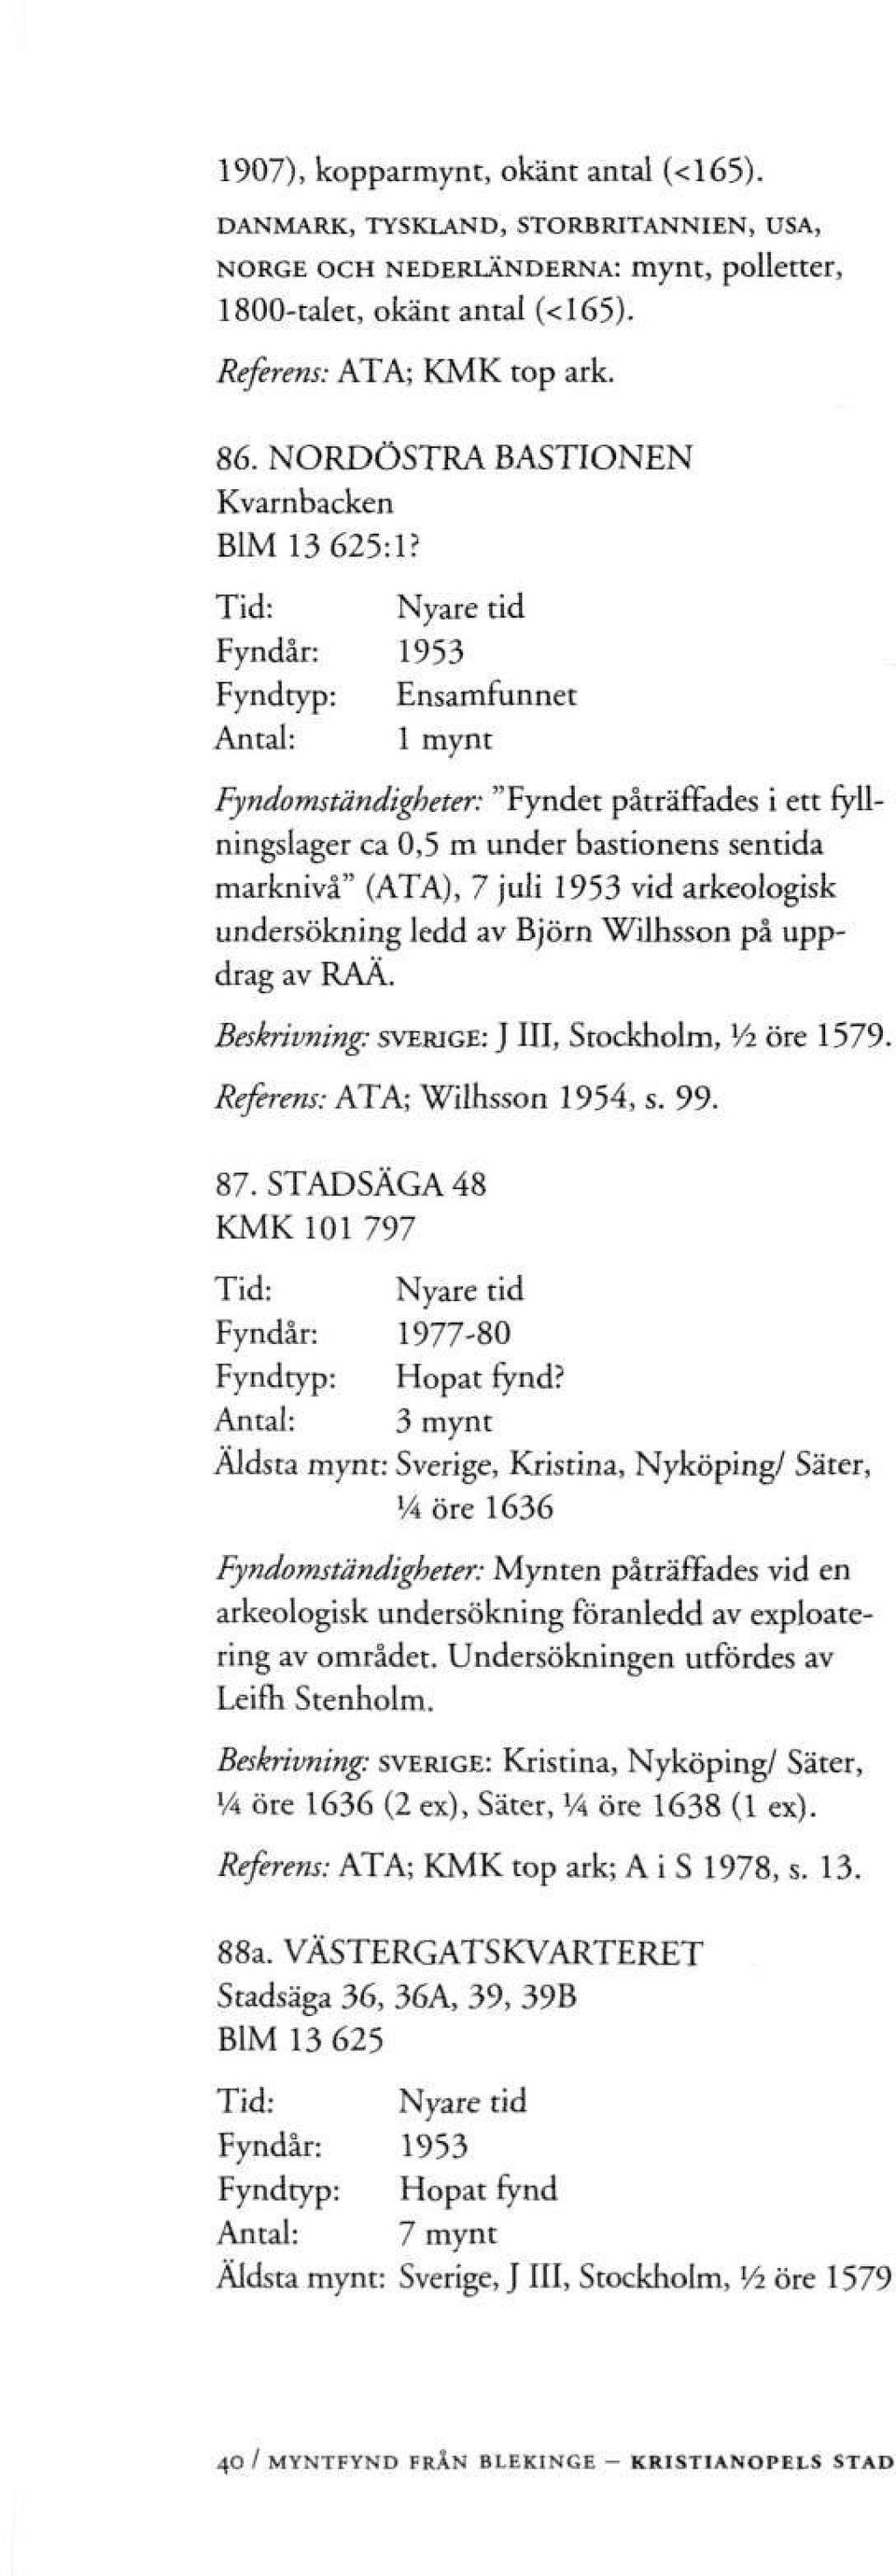 Fyndår: 1953 Fyndomständigheter: "Fyndet påträffades i ett fyllningslager ca 0,5 m under bastionens sentida marknivå" (ATA), 7 juli 1953 vid arkeologisk undersökning ledd av Björn Wilhsson på uppdrag